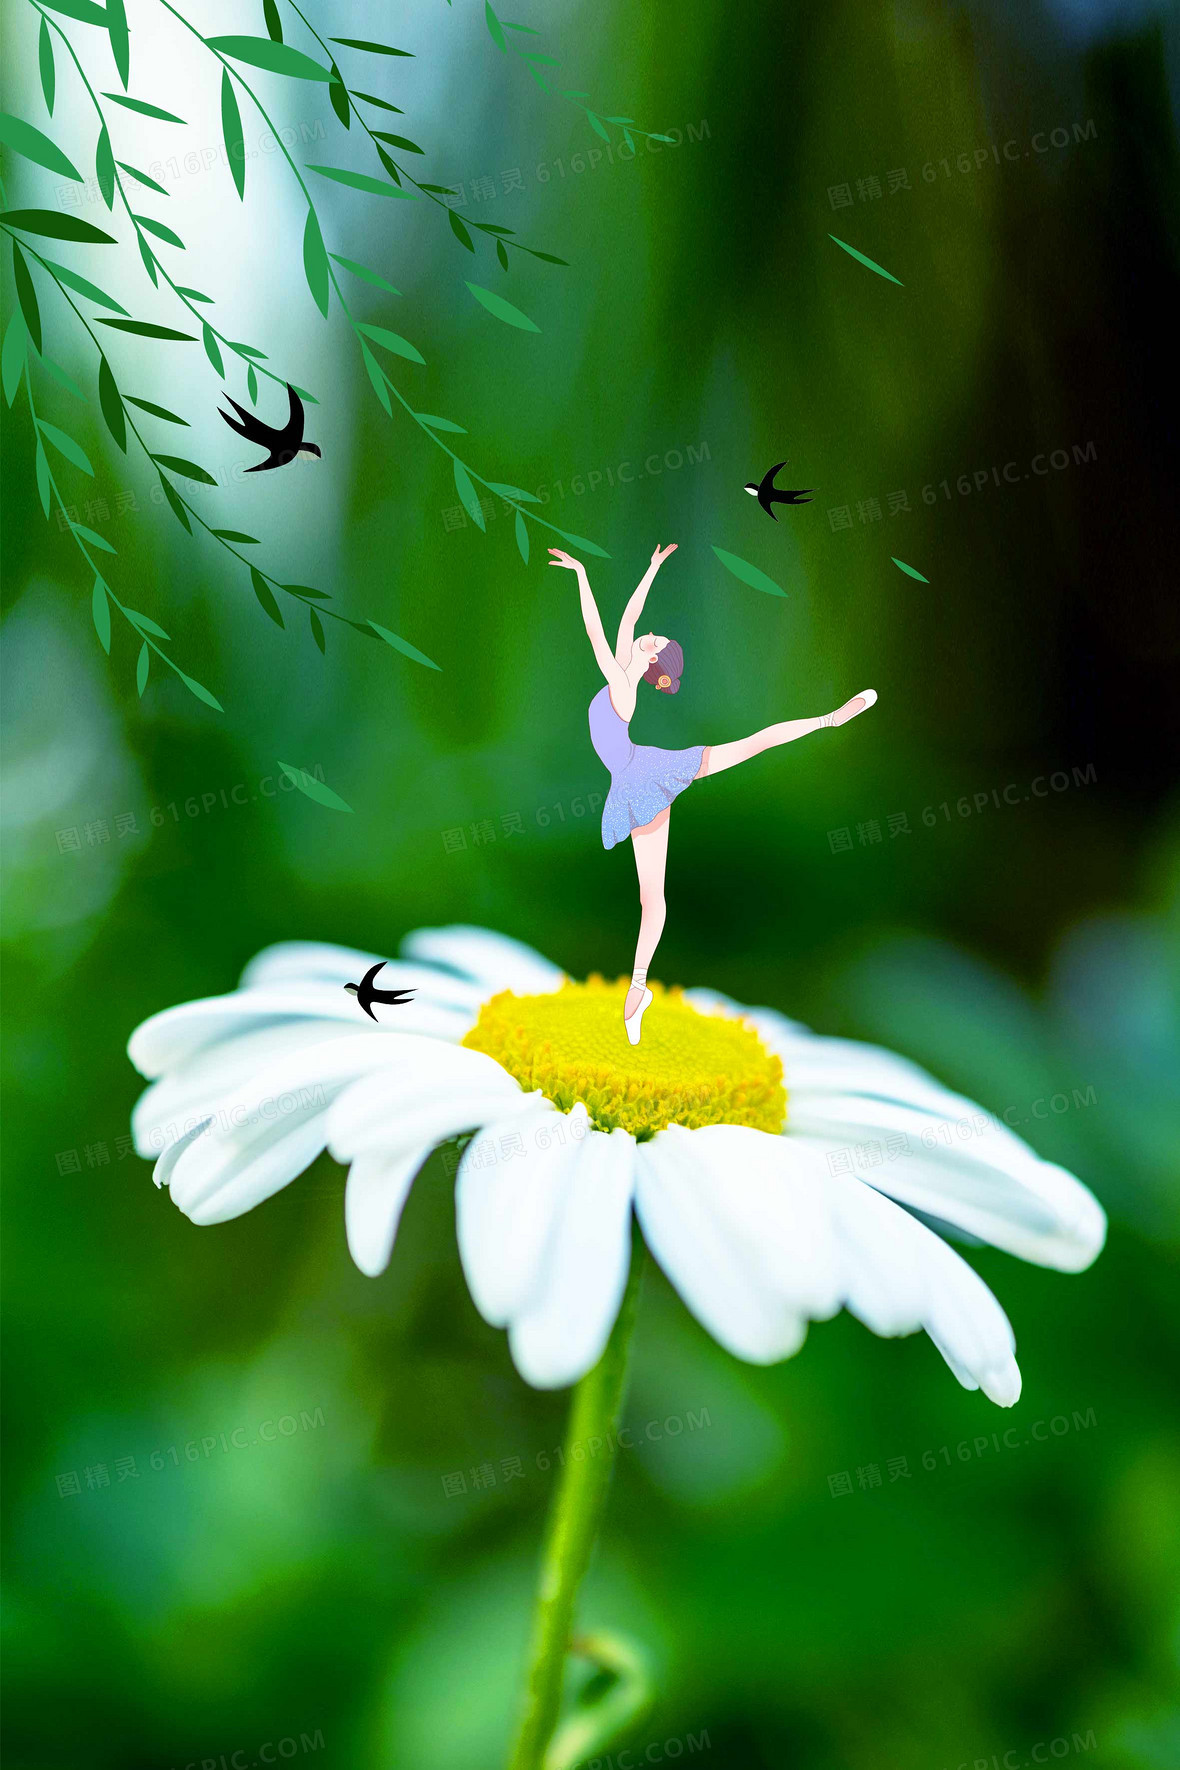 创意摄影图合成燕子花朵背景